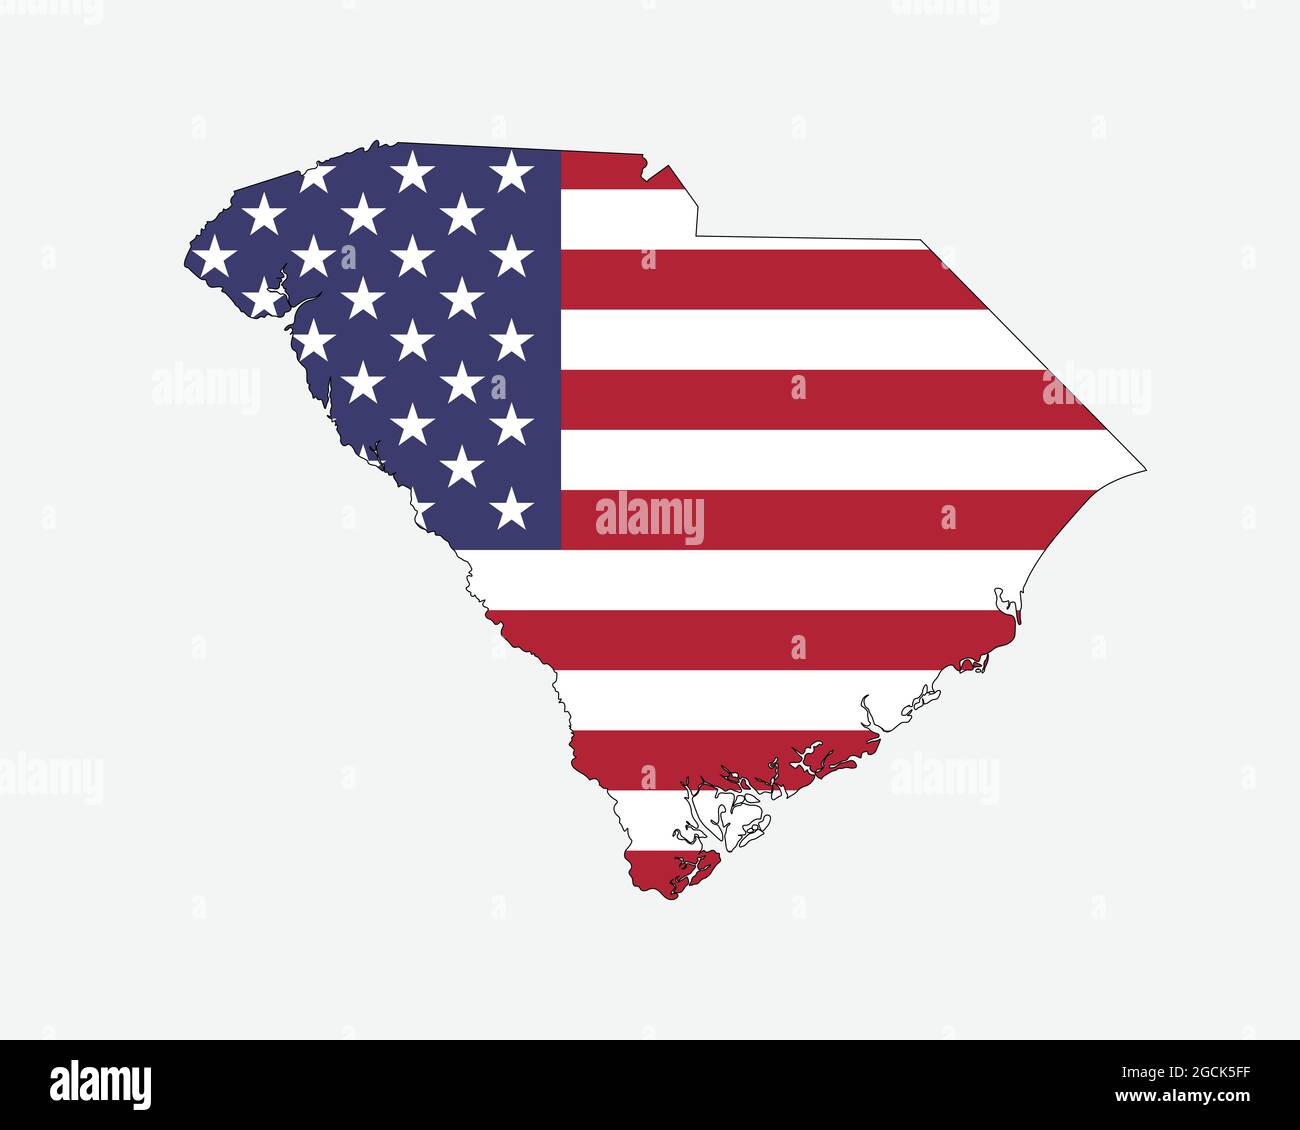 Mappa della Carolina del Sud sulla bandiera americana. SC, USA mappa di stato sulla bandiera degli Stati Uniti. Icona Clipart grafica vettoriale EPS Illustrazione Vettoriale